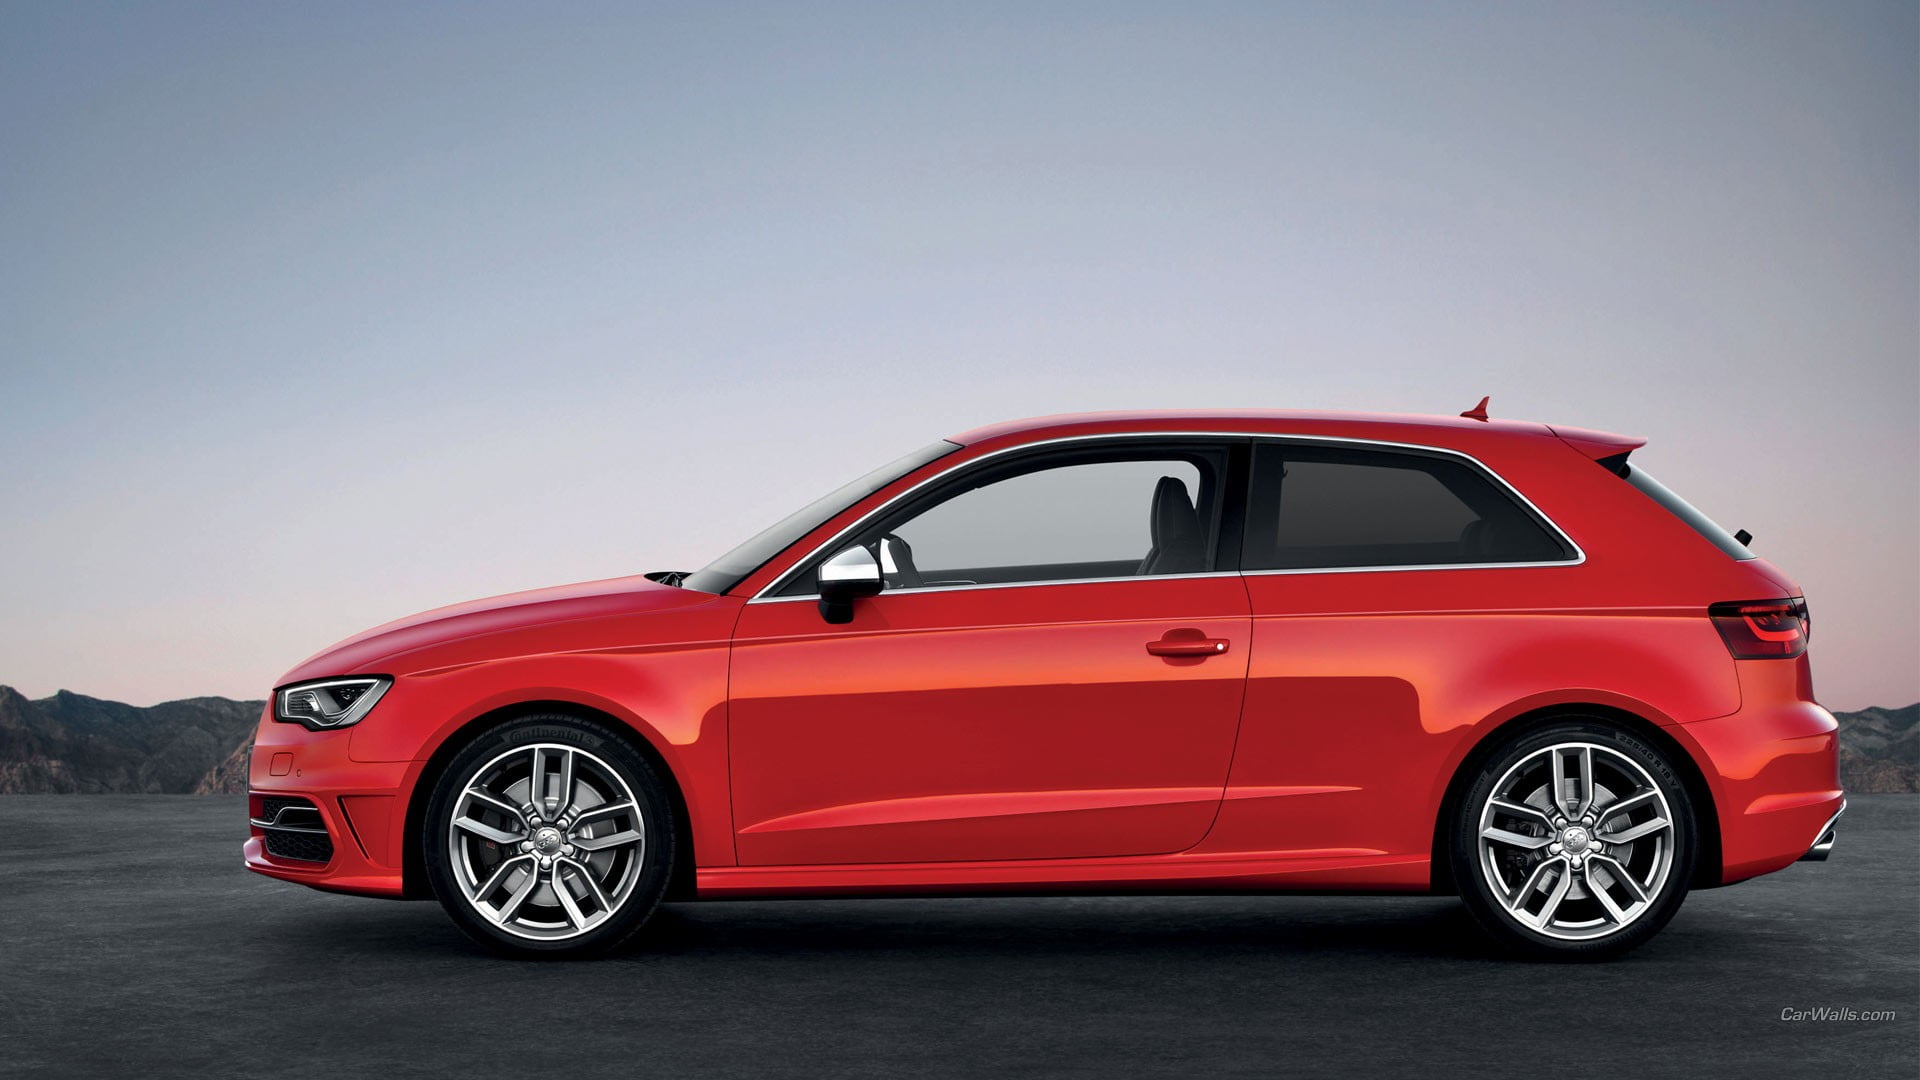 red 3-door hatchback, Audi S3, red cars, Audi, car